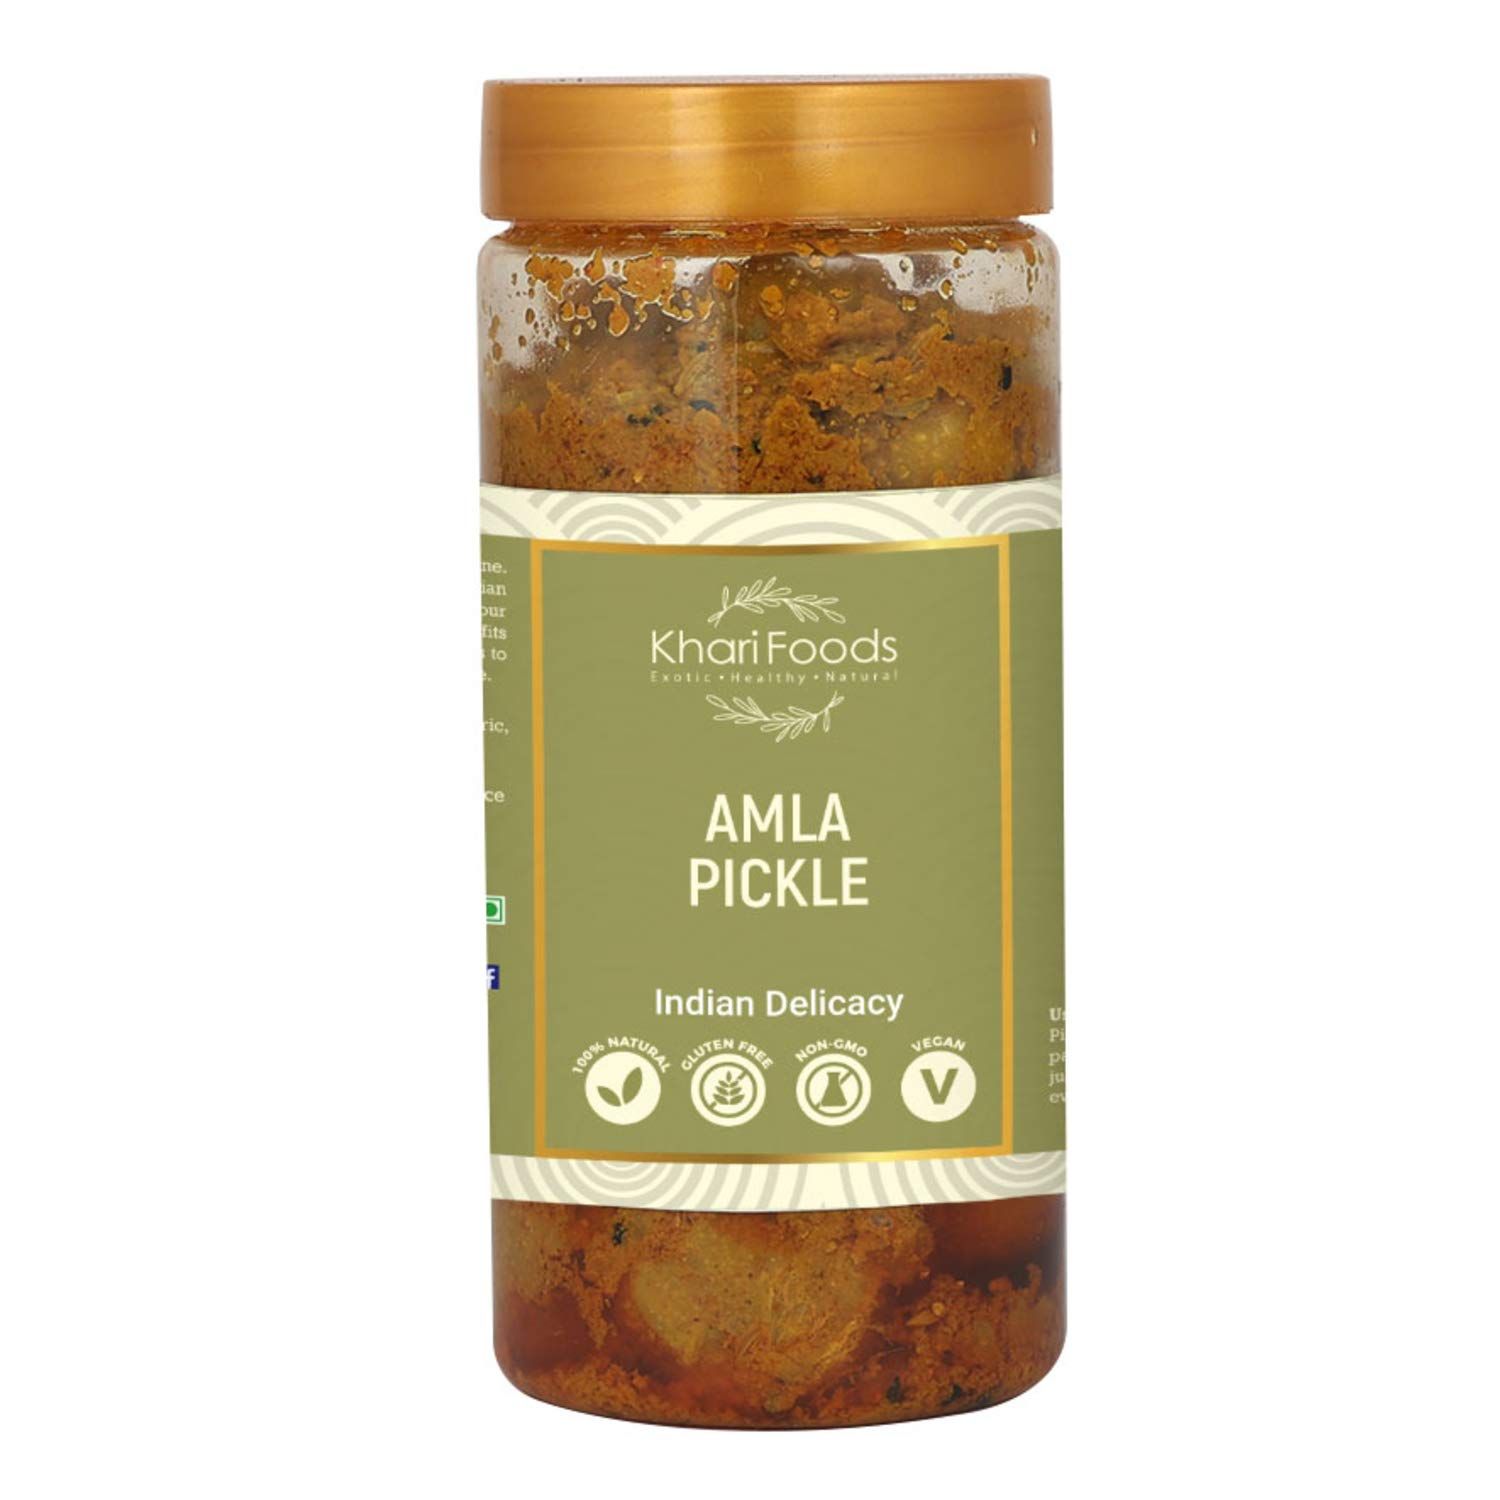 Khari Foods Amla Pickle Image